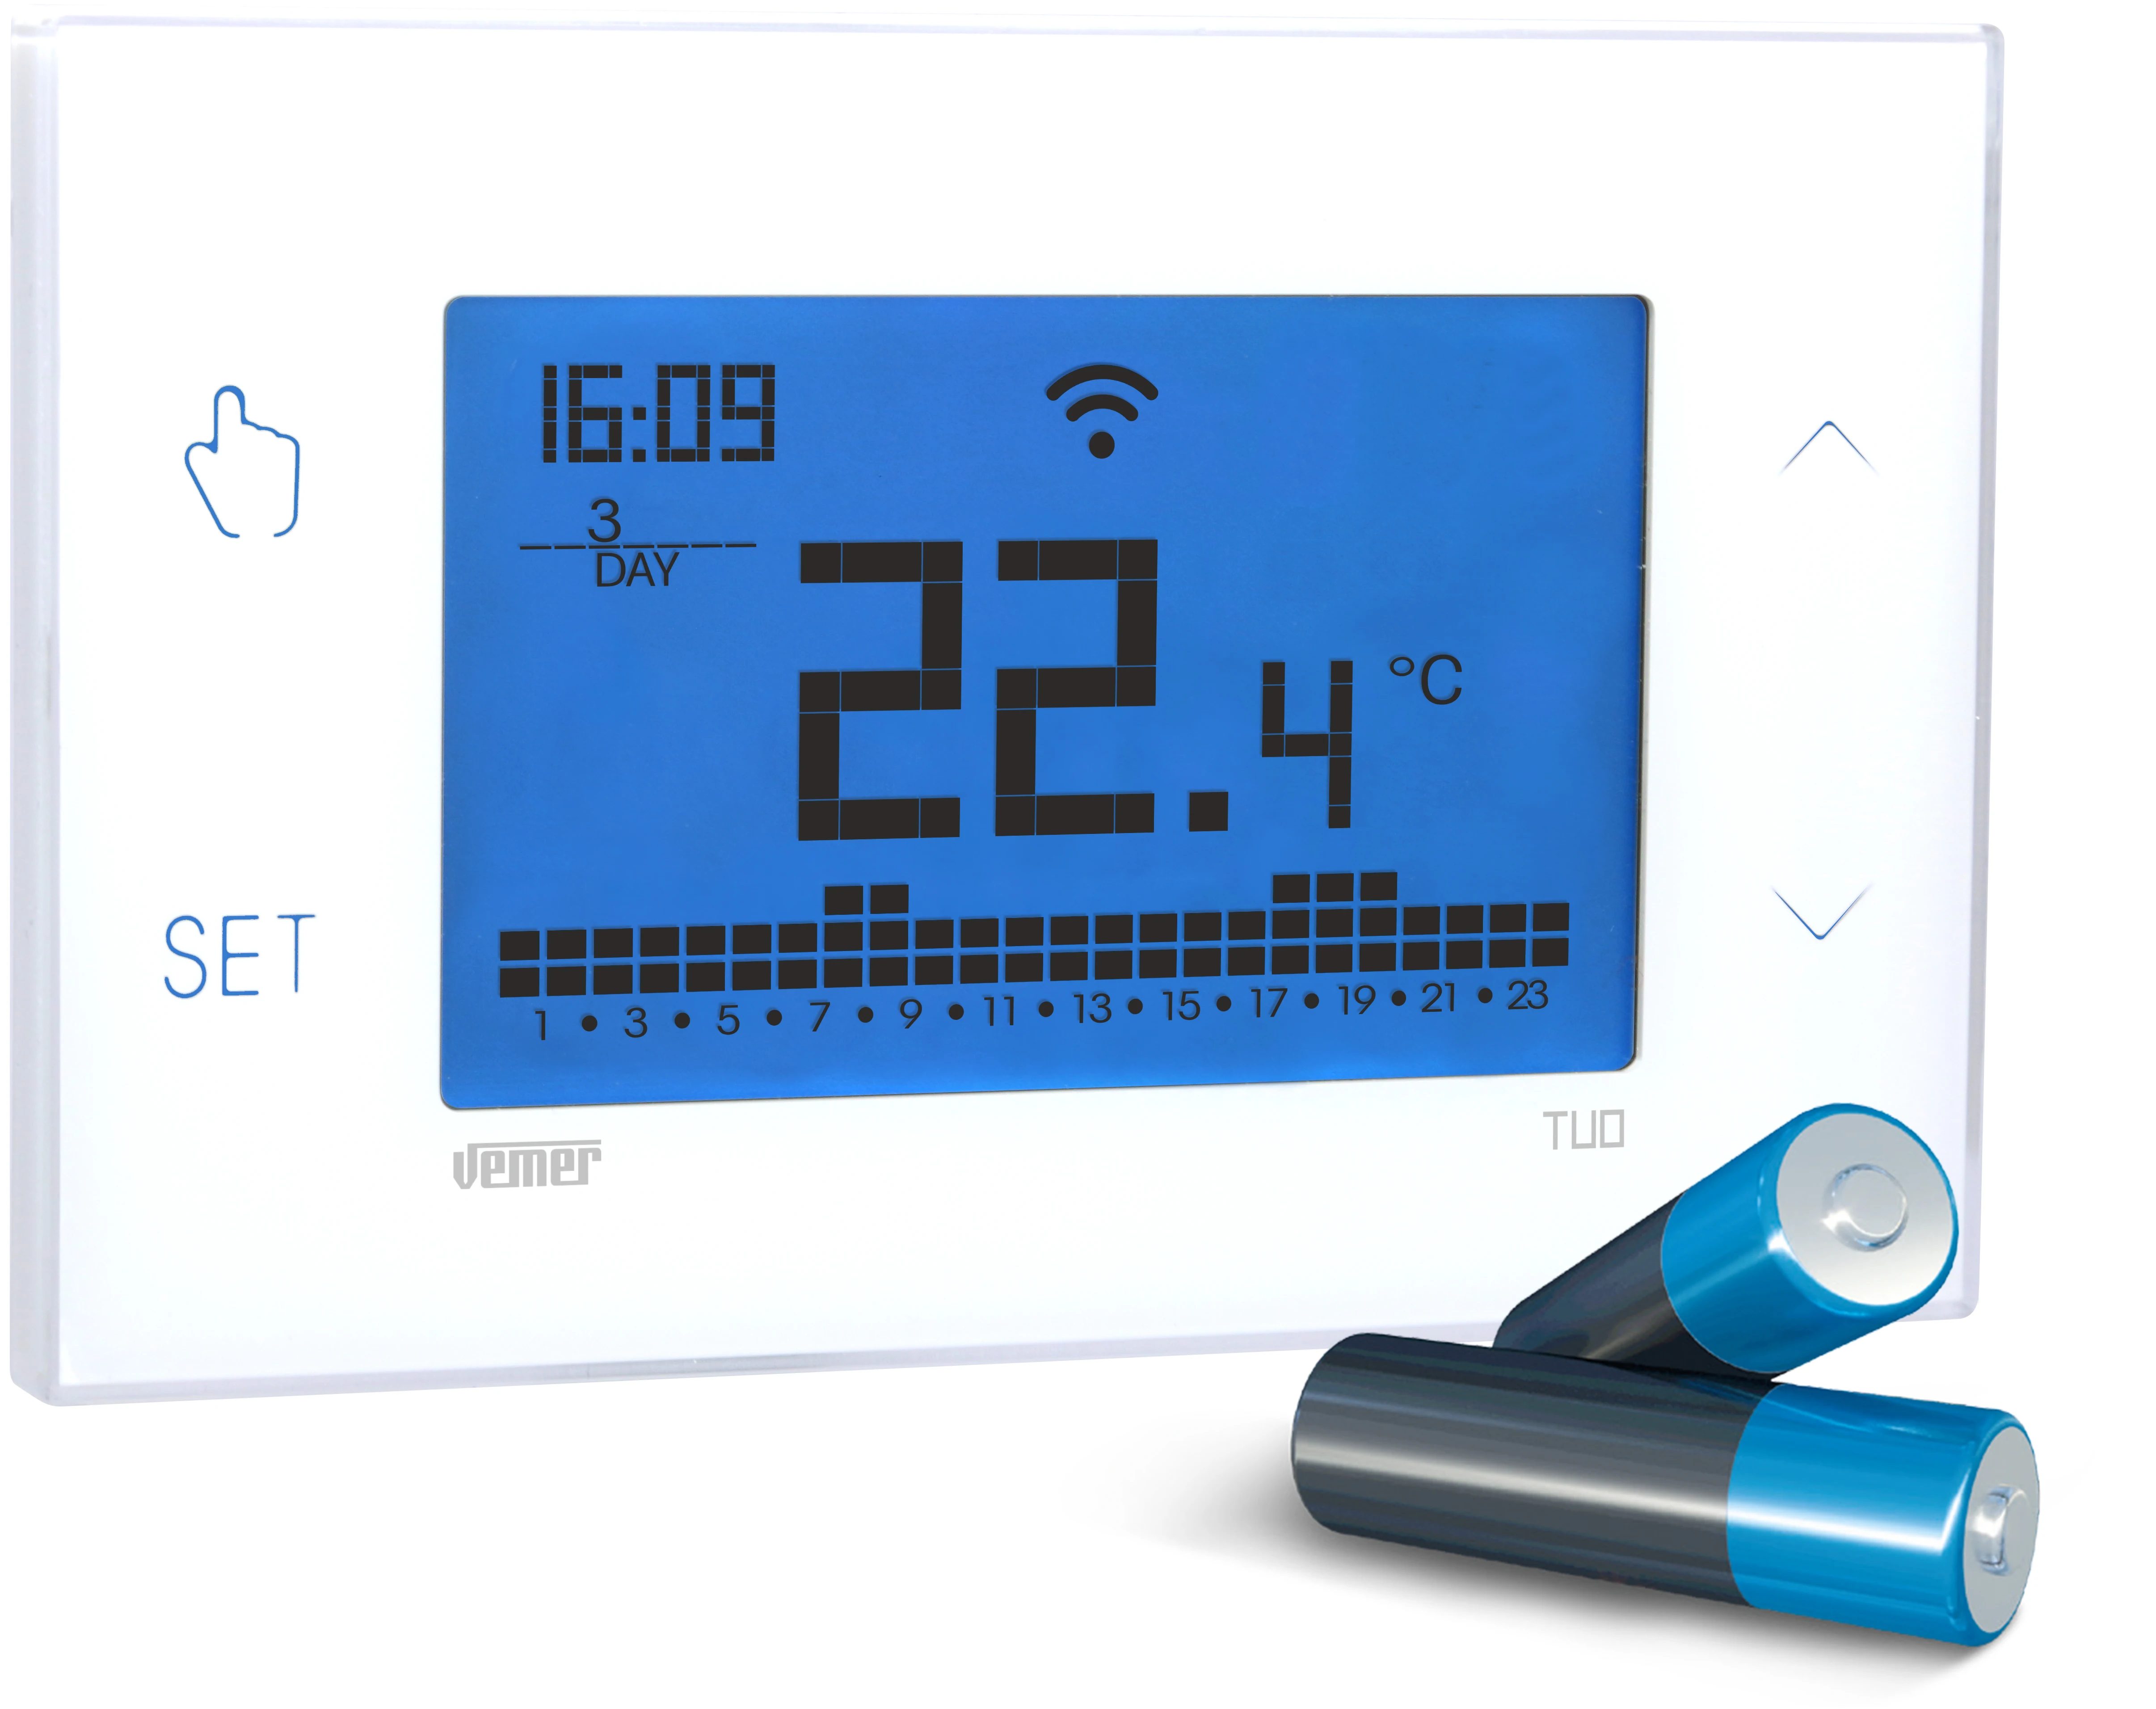 VEMER VE788600 TUO WiFi BATERÍA - Termostato Calefacción WiFi Inteligente,  Control Remoto Desde Smartphone por App iOS